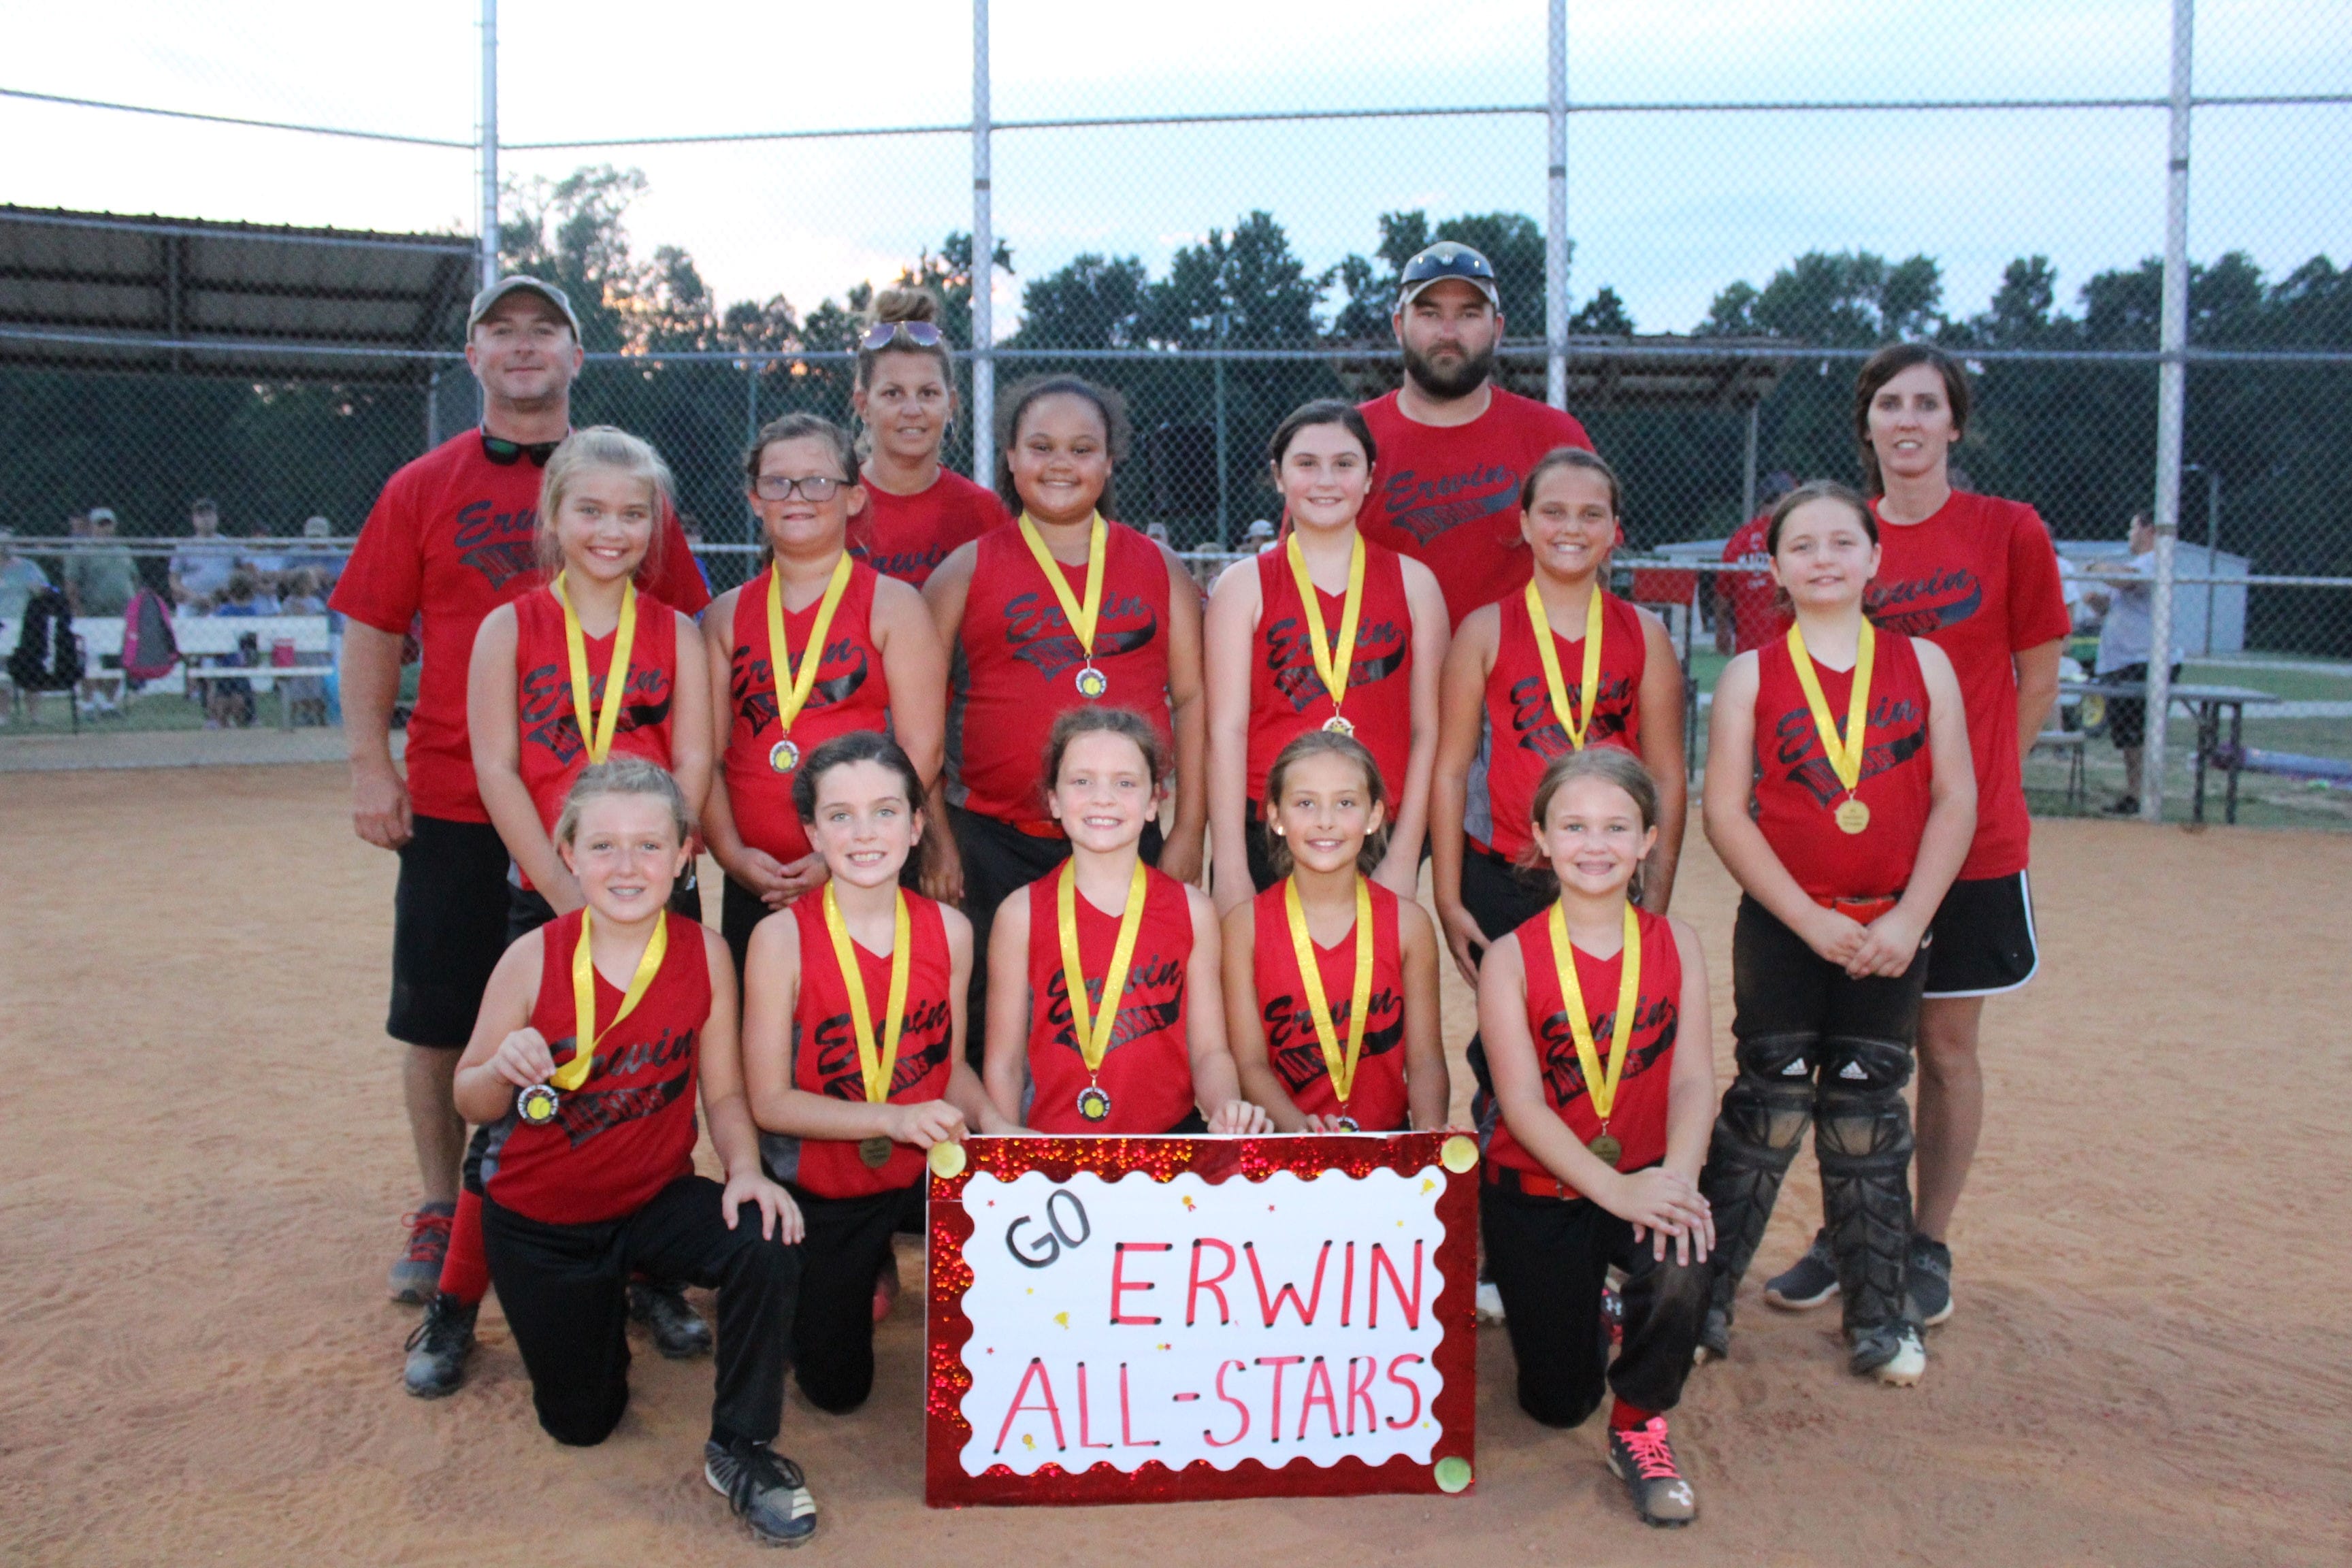 Erwin takes 10-U, Western wins 12-U in Tar Heel district softball